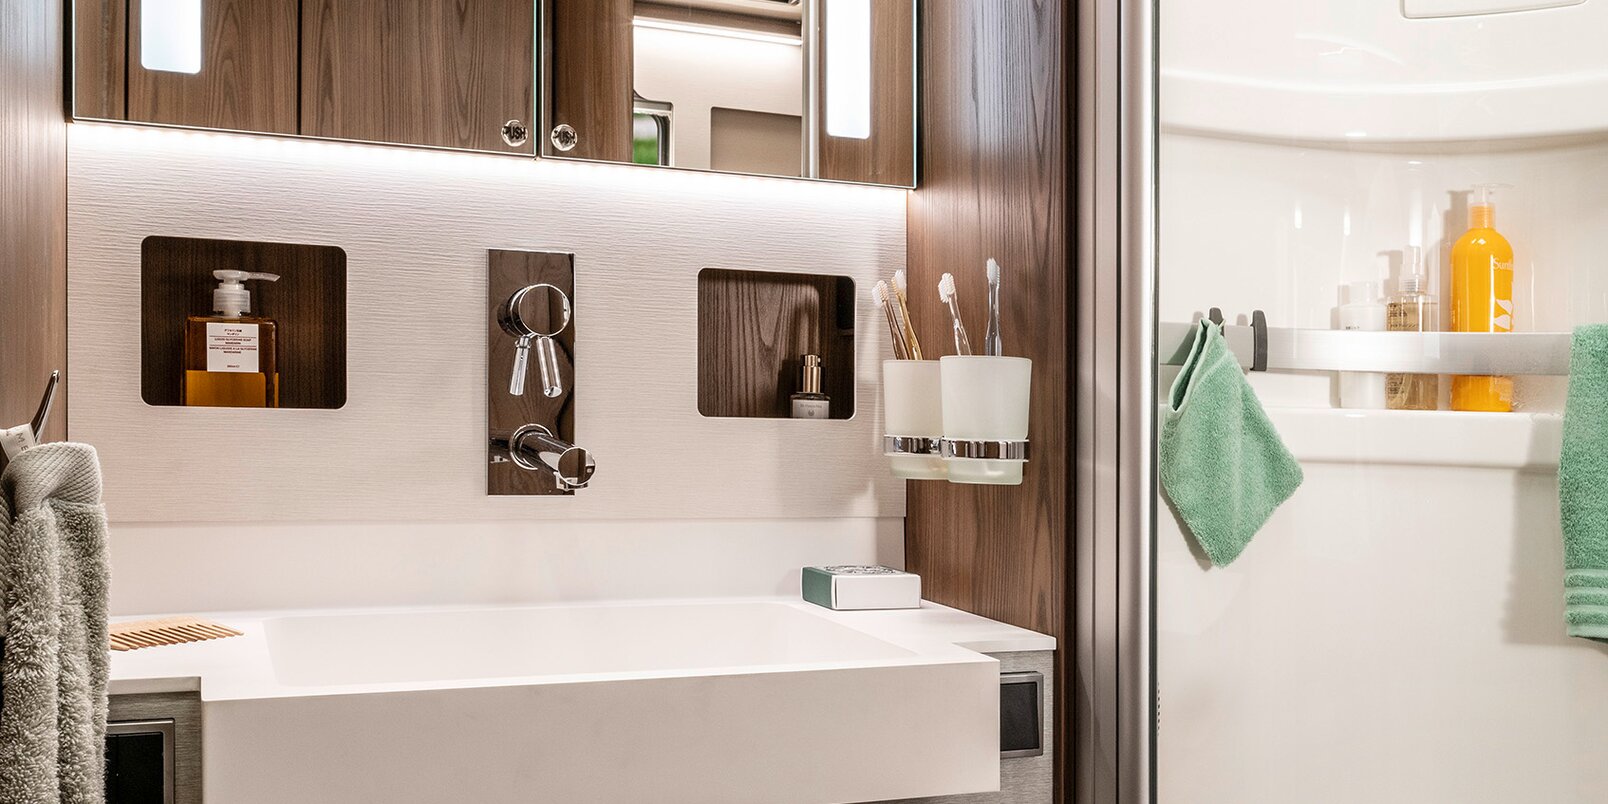 HYMER B-Klasse MasterLinen salonkimaisessa kylpyhuoneessa on peilikaappi epäsuoralla valaistuksella ja säilytystilaa pesualtaan alla